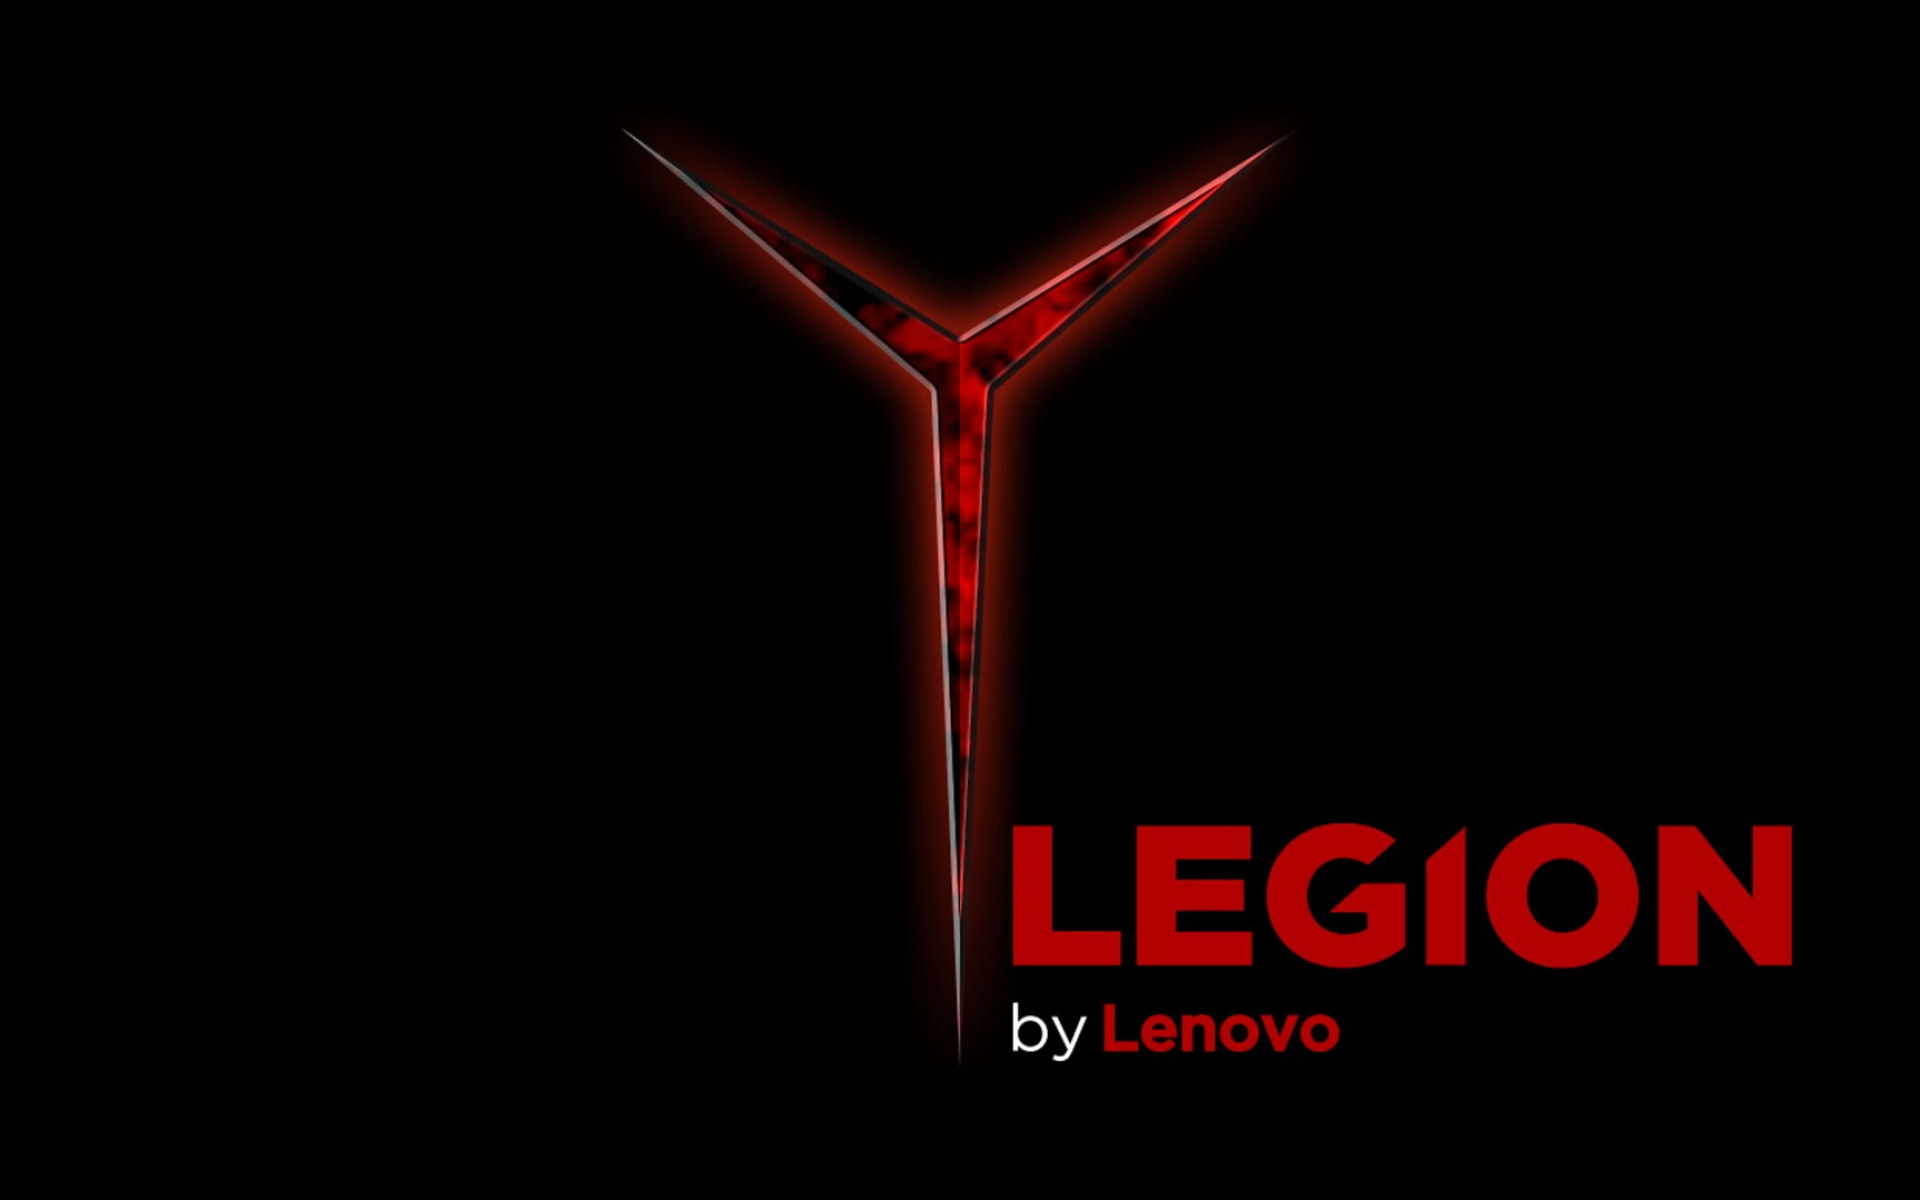 Lenovo wallpaper, lenovo legion, PC gaming, red, illuminated, black background • Wallpaper For You HD Wallpaper For Desktop & Mobile